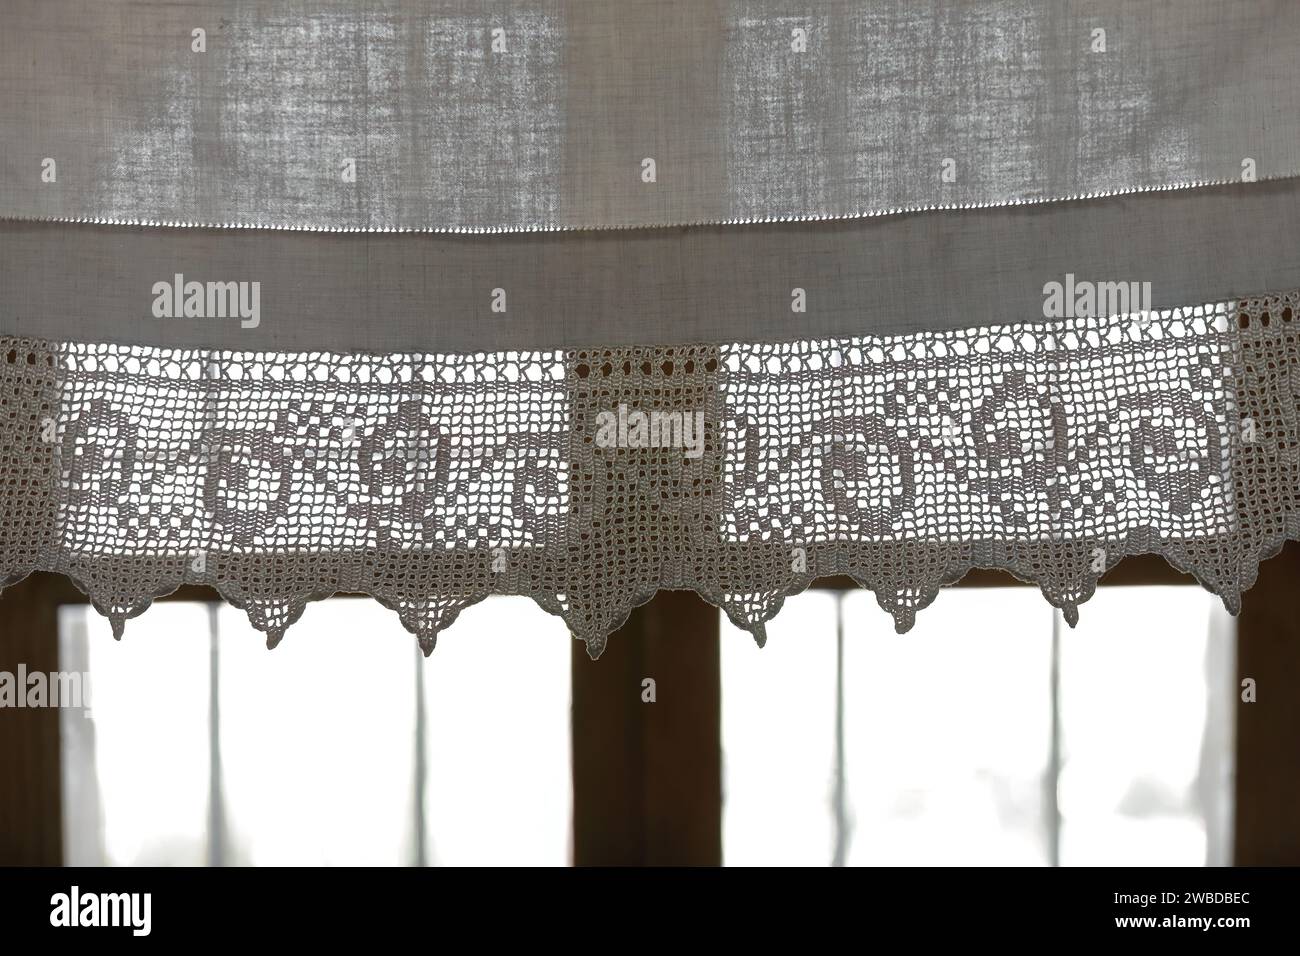 219 rideau de coton fini crochet, fenêtre d'une maison de style ottoman, la plus riche de la ville, dans la partie haute de la vieille ville. Gjirokaster-Albanie. Banque D'Images